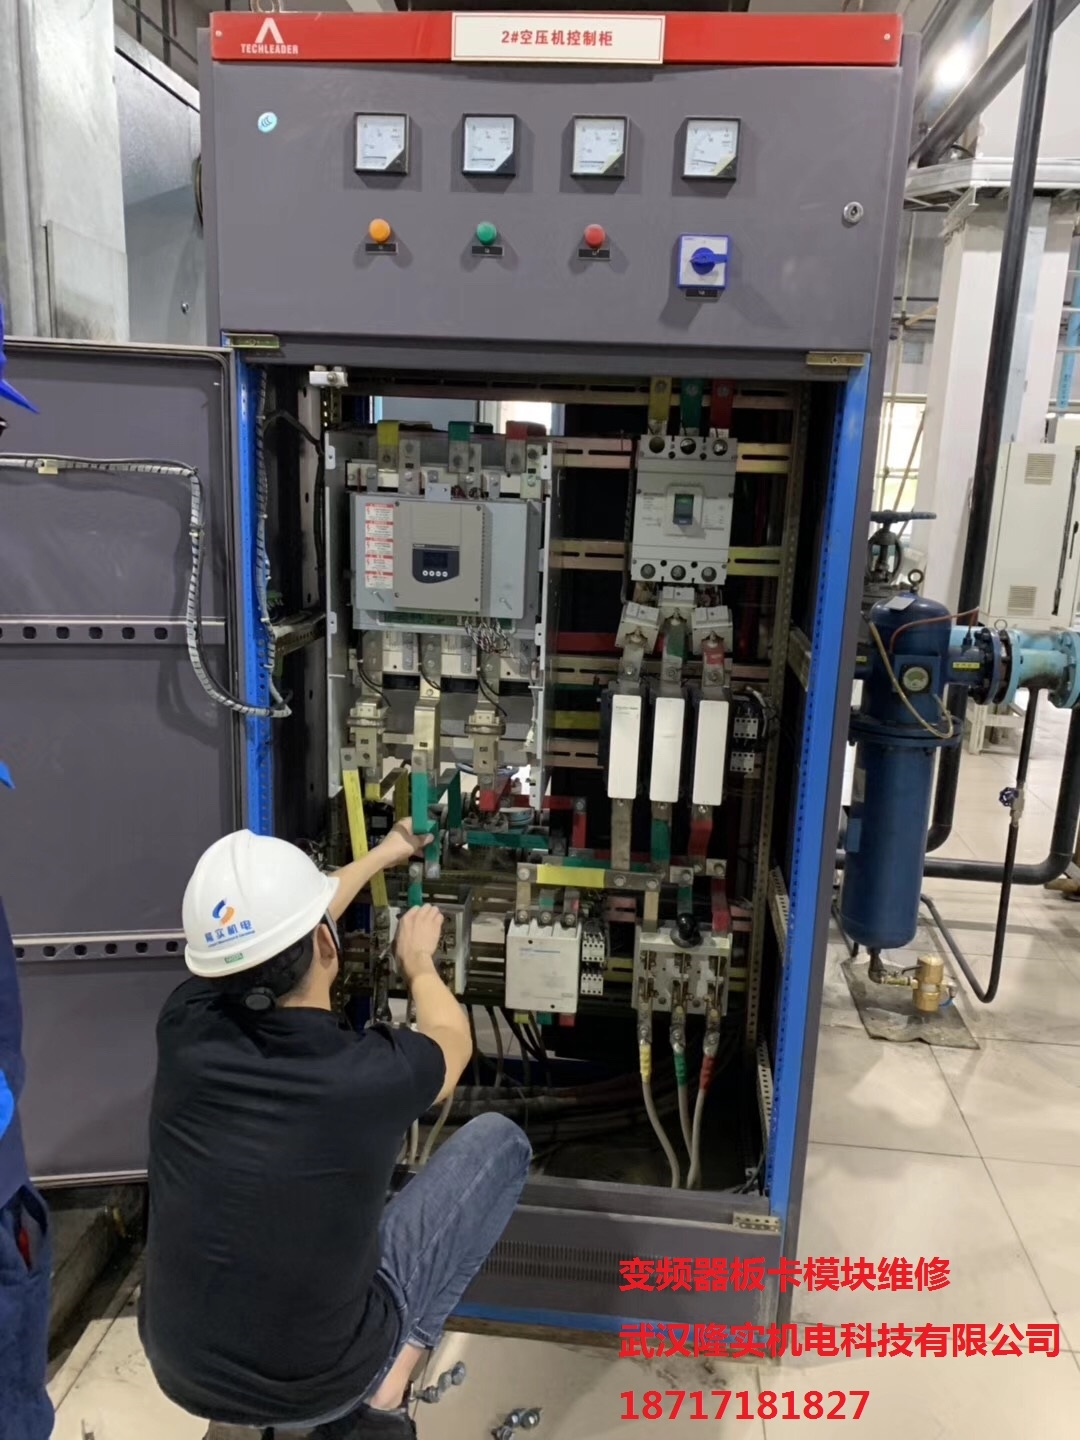 武汉隆实机电学习施耐德旗舰店变频器软起动PLC维修维护系统方法方案